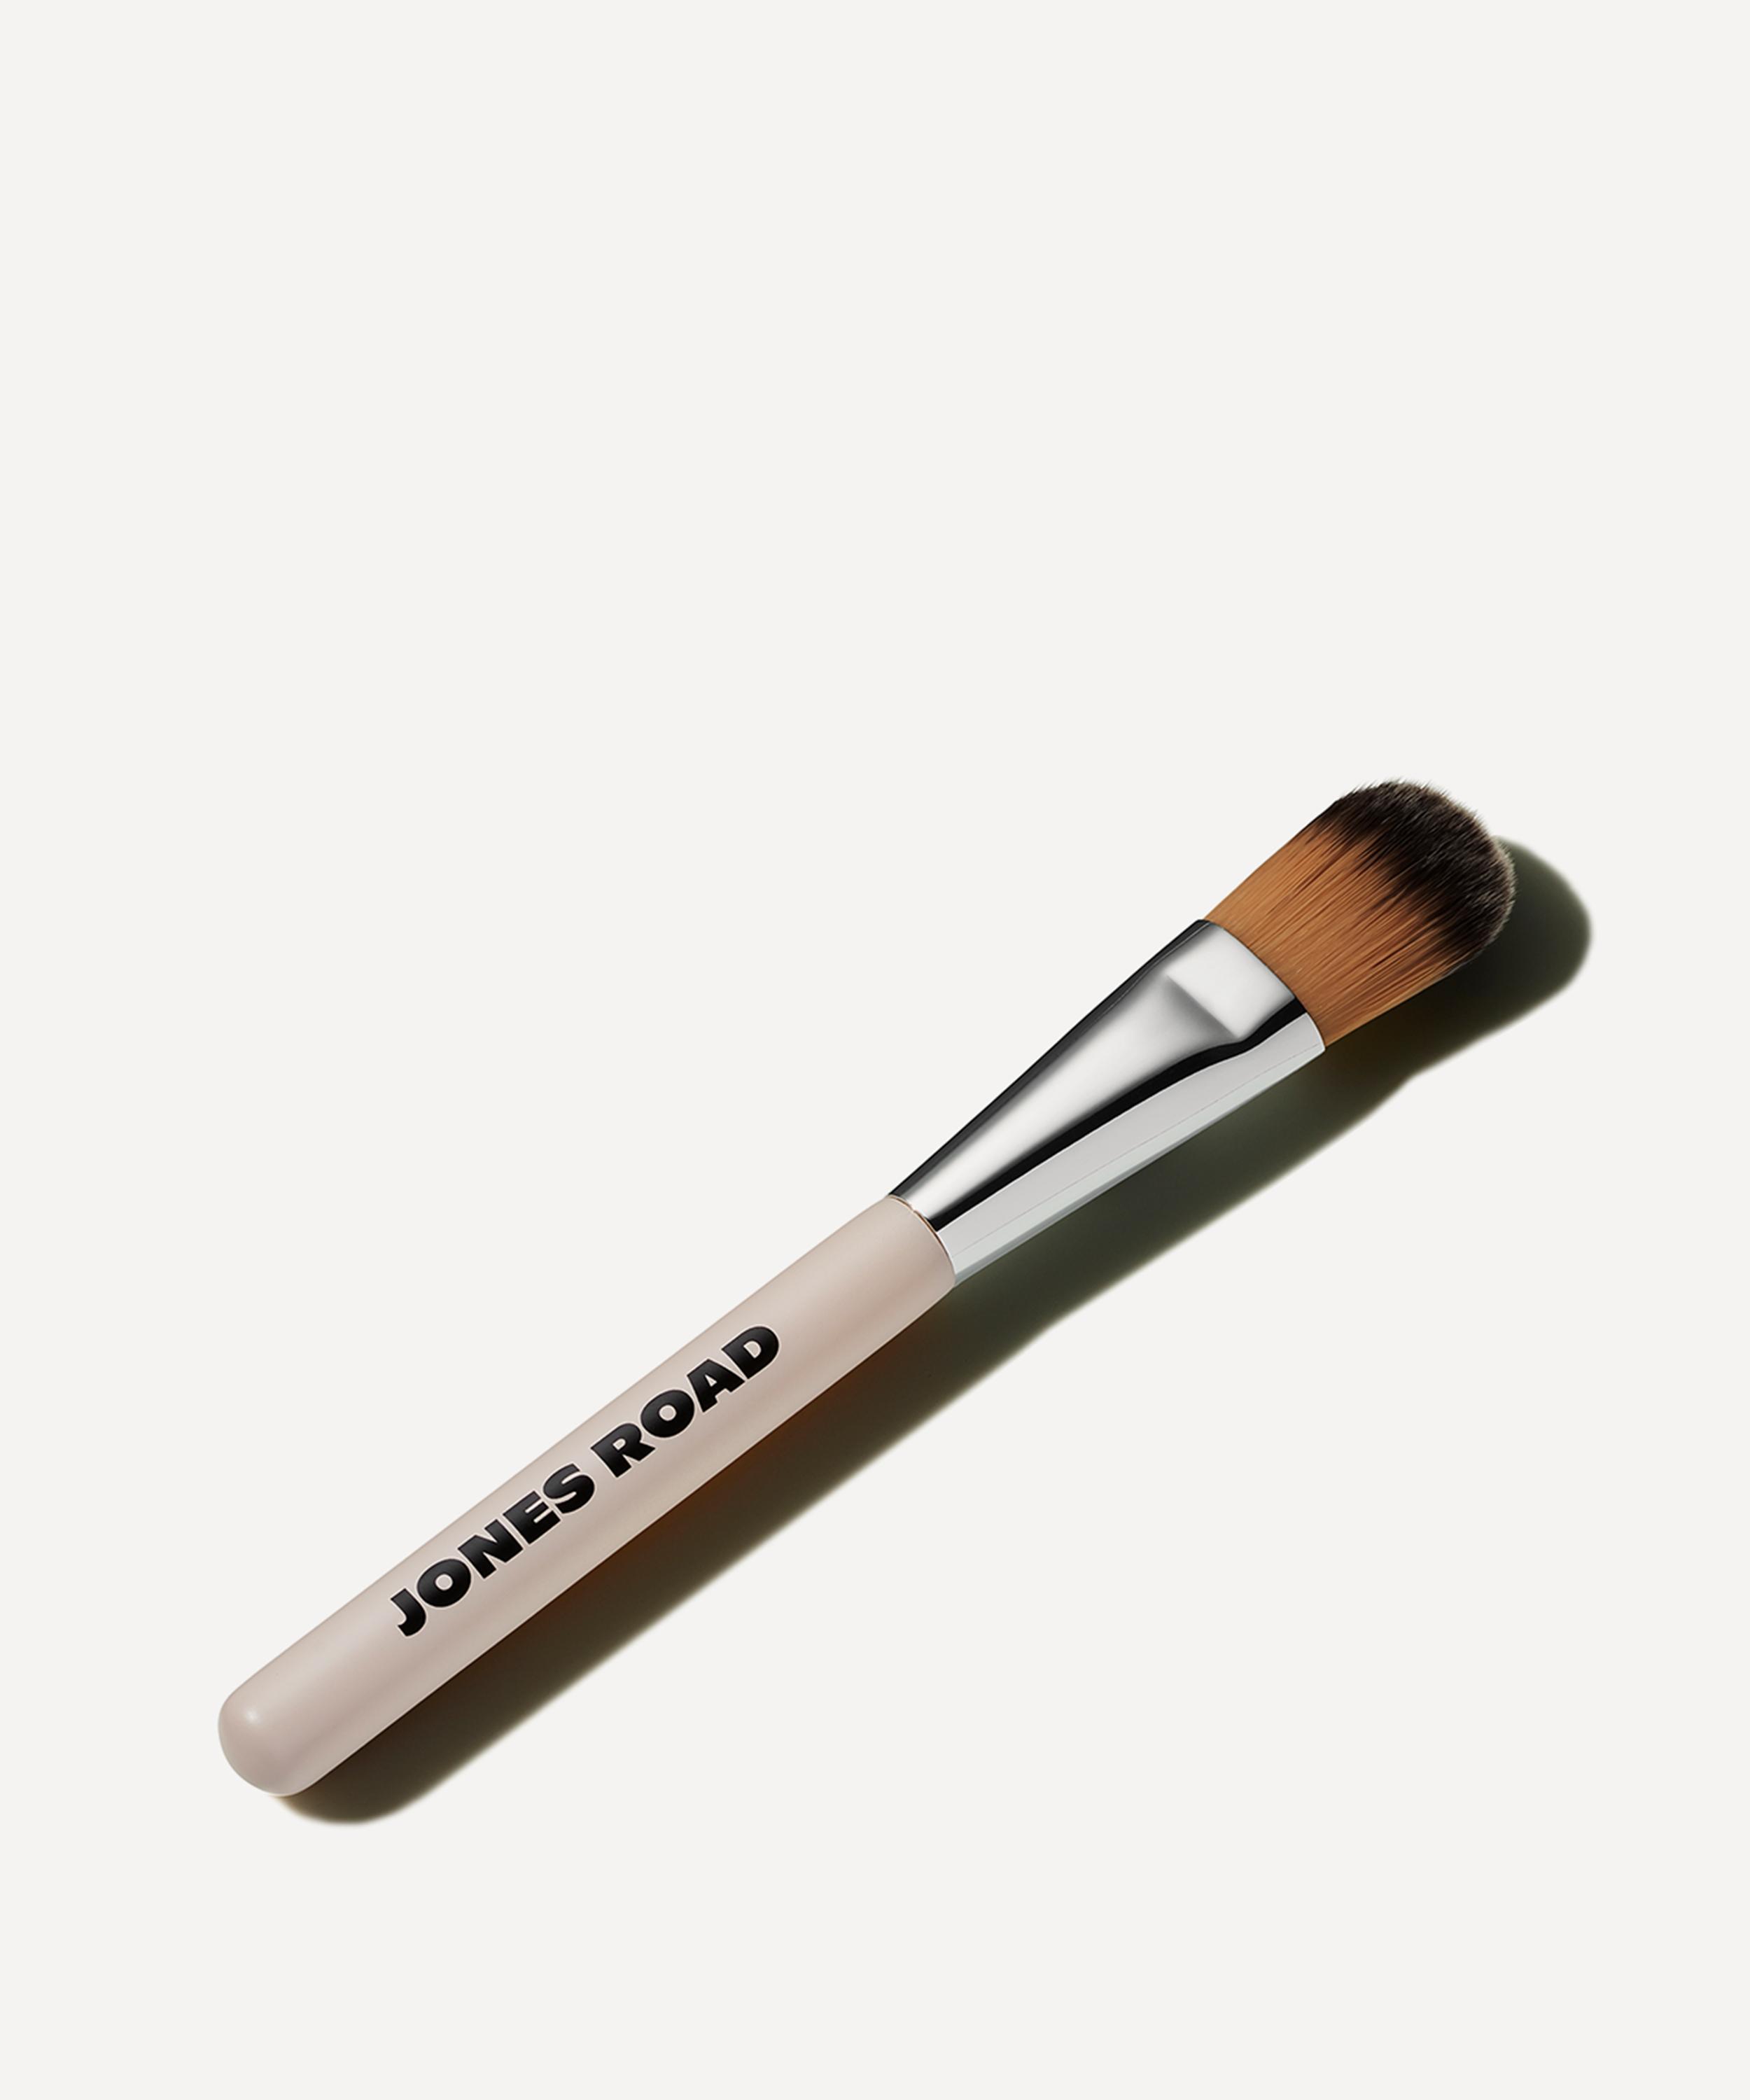 The Detail Brush for Clean Makeup – Jones Road